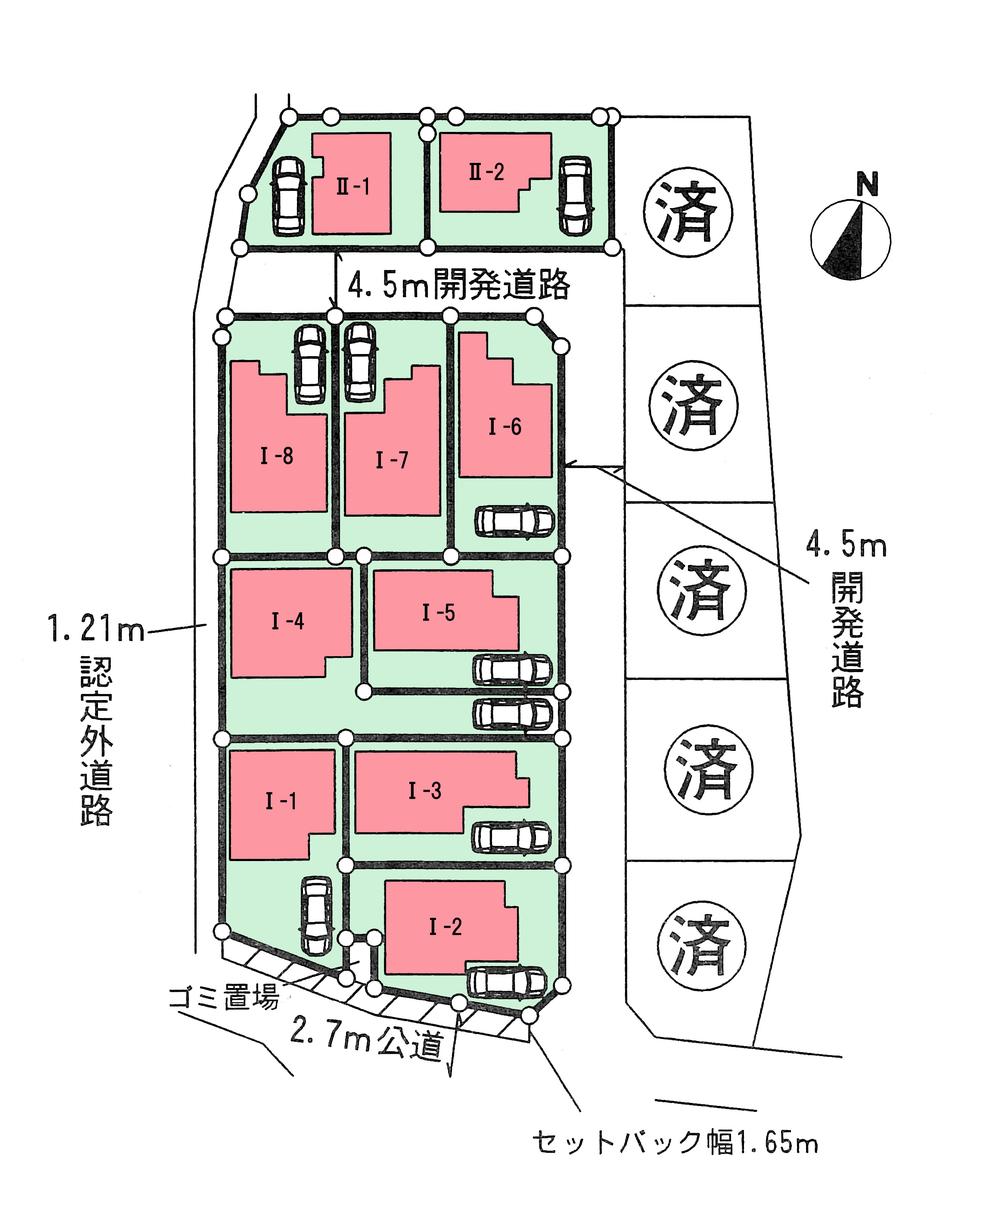 Compartment figure. 30,300,000 yen, 4LDK, Land area 125.2 sq m , Building area 93.57 sq m